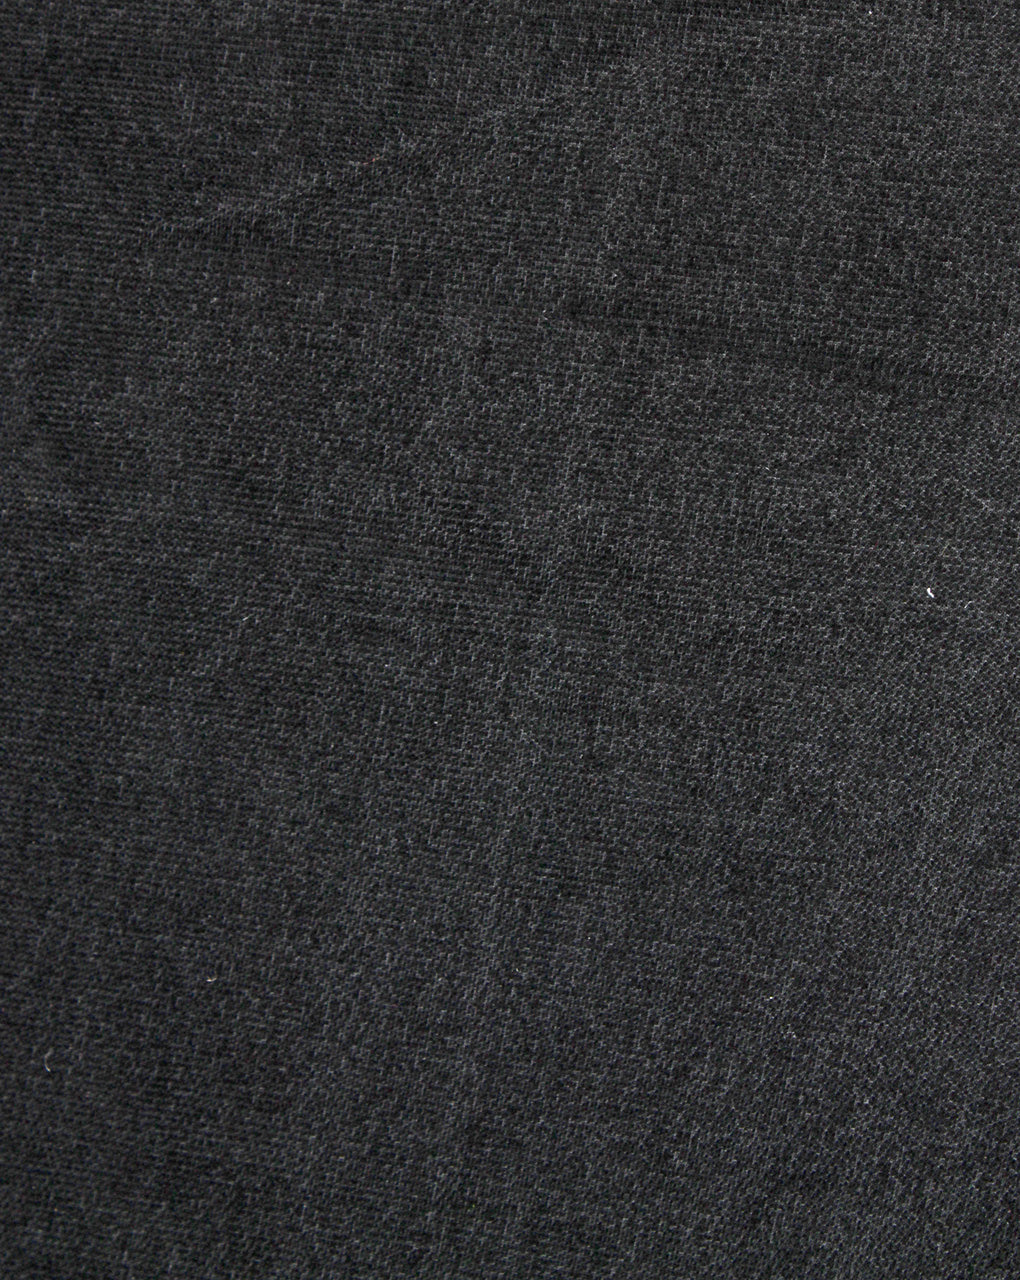 Plain Black Polyester Velvet Fabric